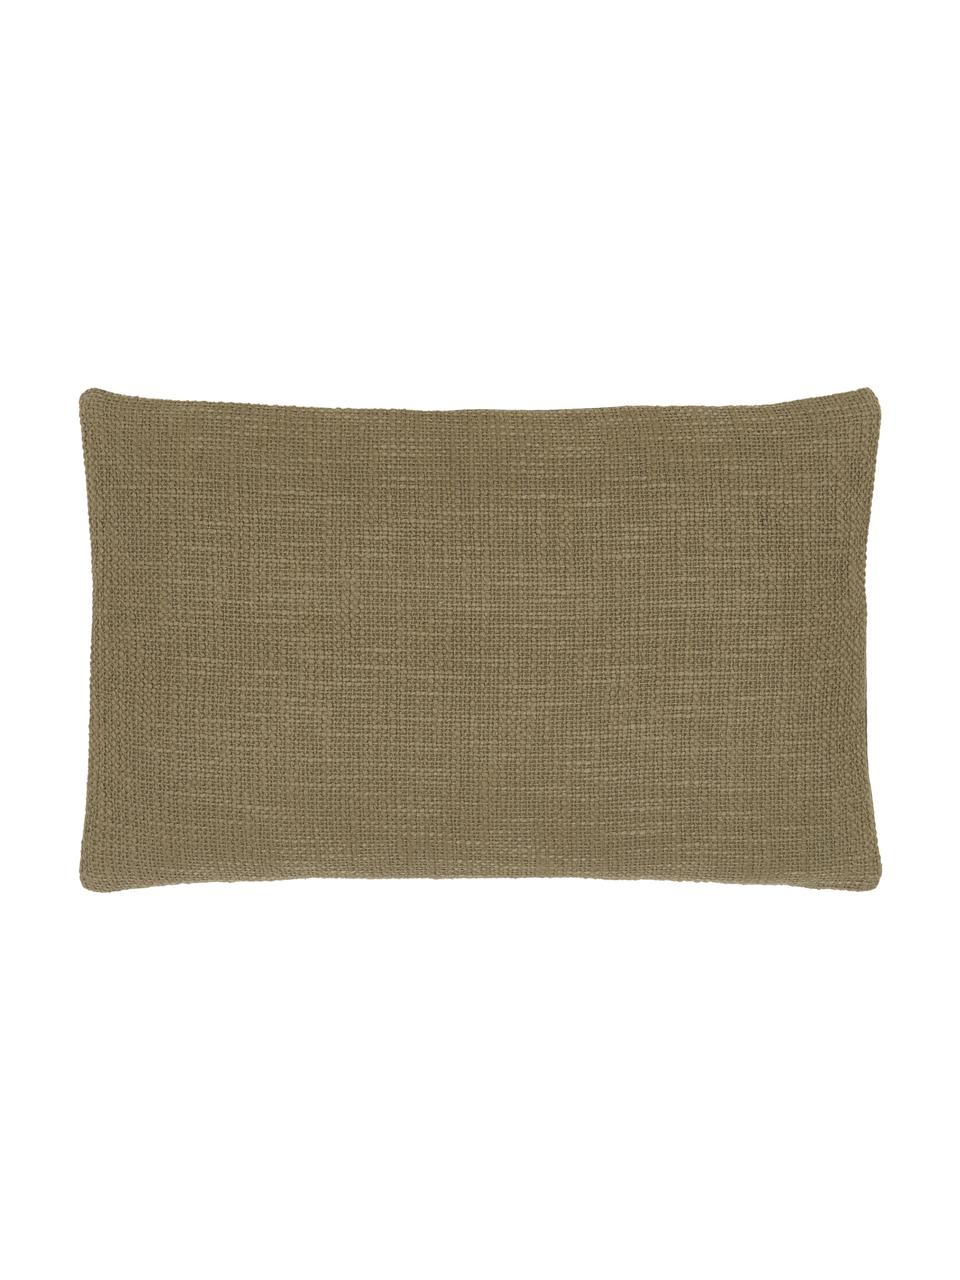 Poszewka na poduszkę Anise, 100% bawełna, Zielony, S 30 x D 50 cm